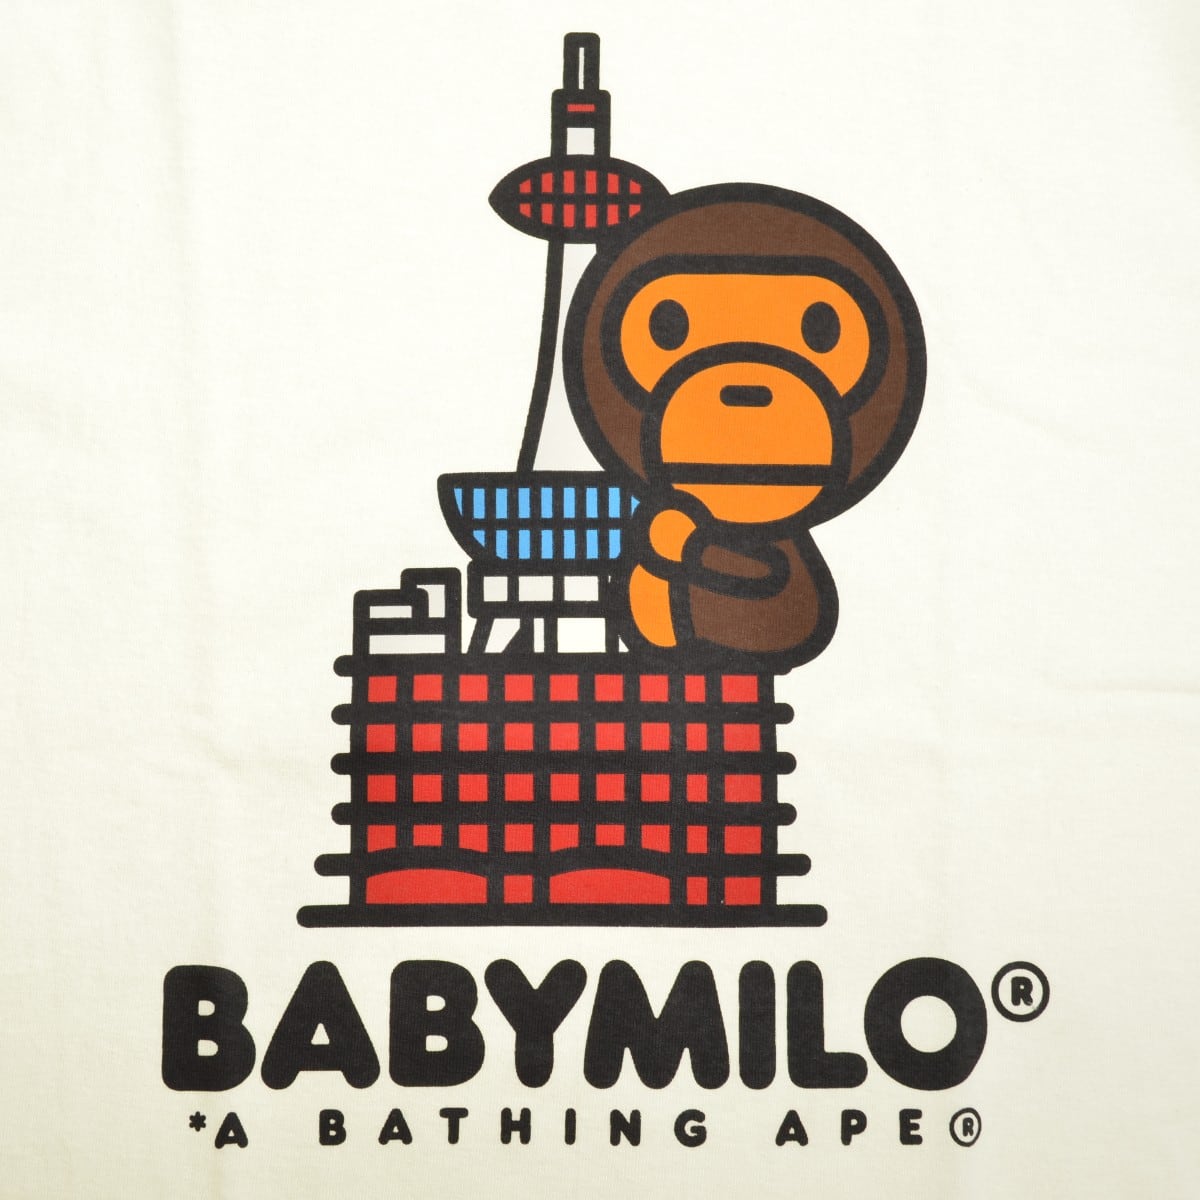 a bathing ape baby milo 総柄 パーカー 猿 Sサイズ